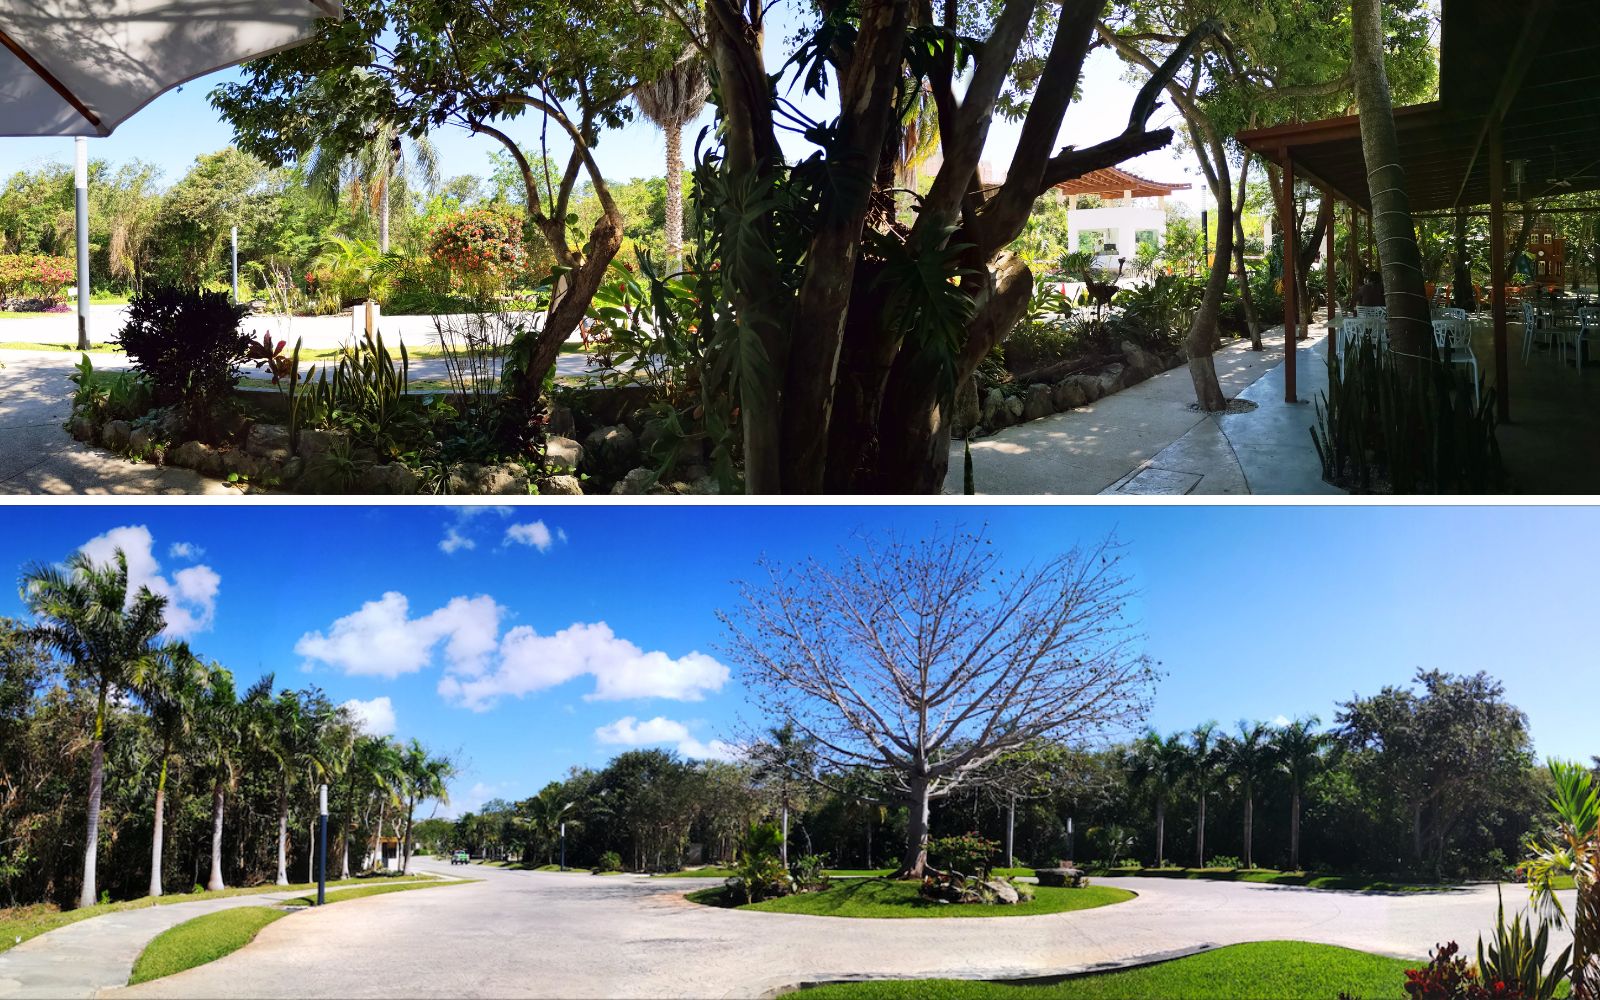 Lote de 970 m2, en residencial, con cenote, en venta Selvamar,  Playa del Carmen.